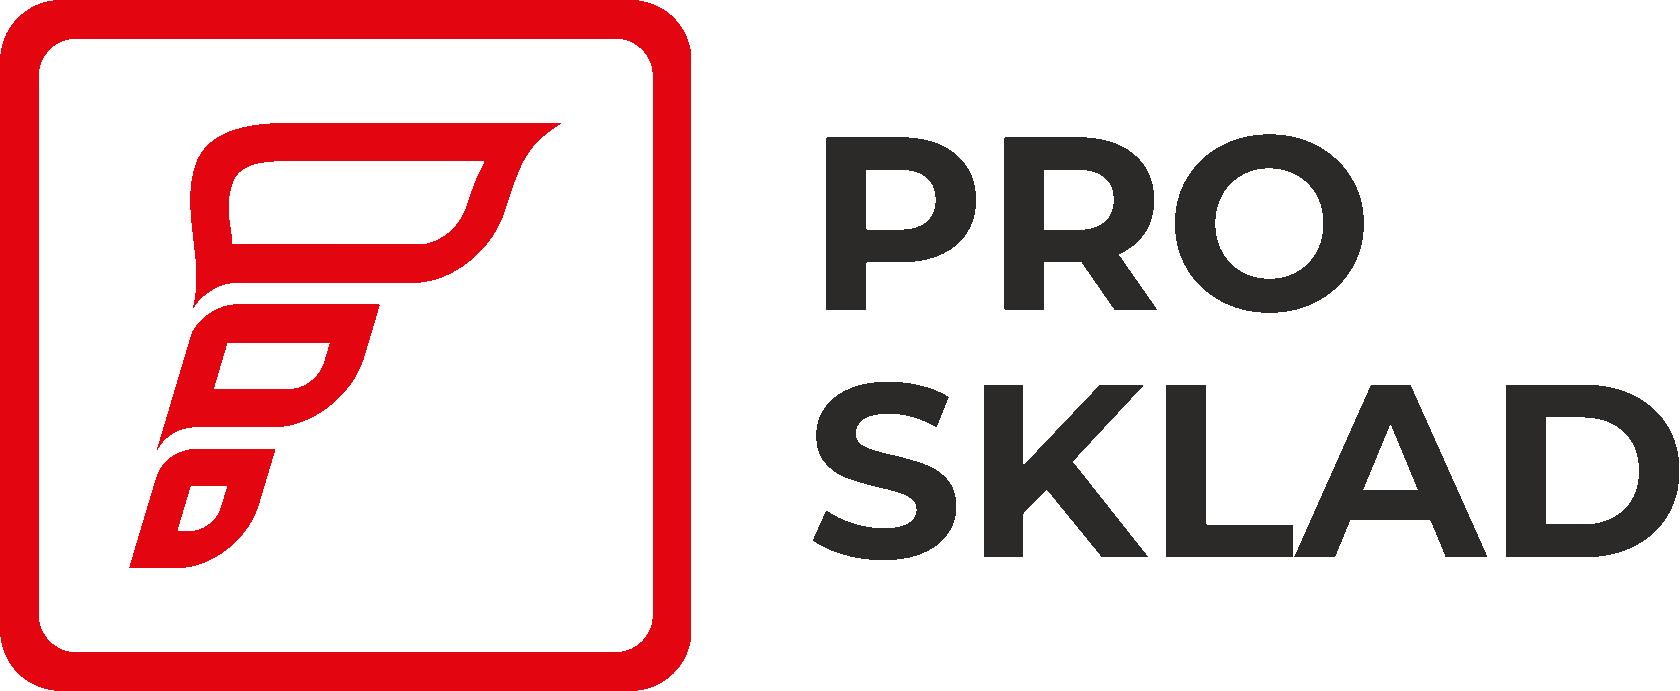 Prosklad - бесплатная система автоматизации